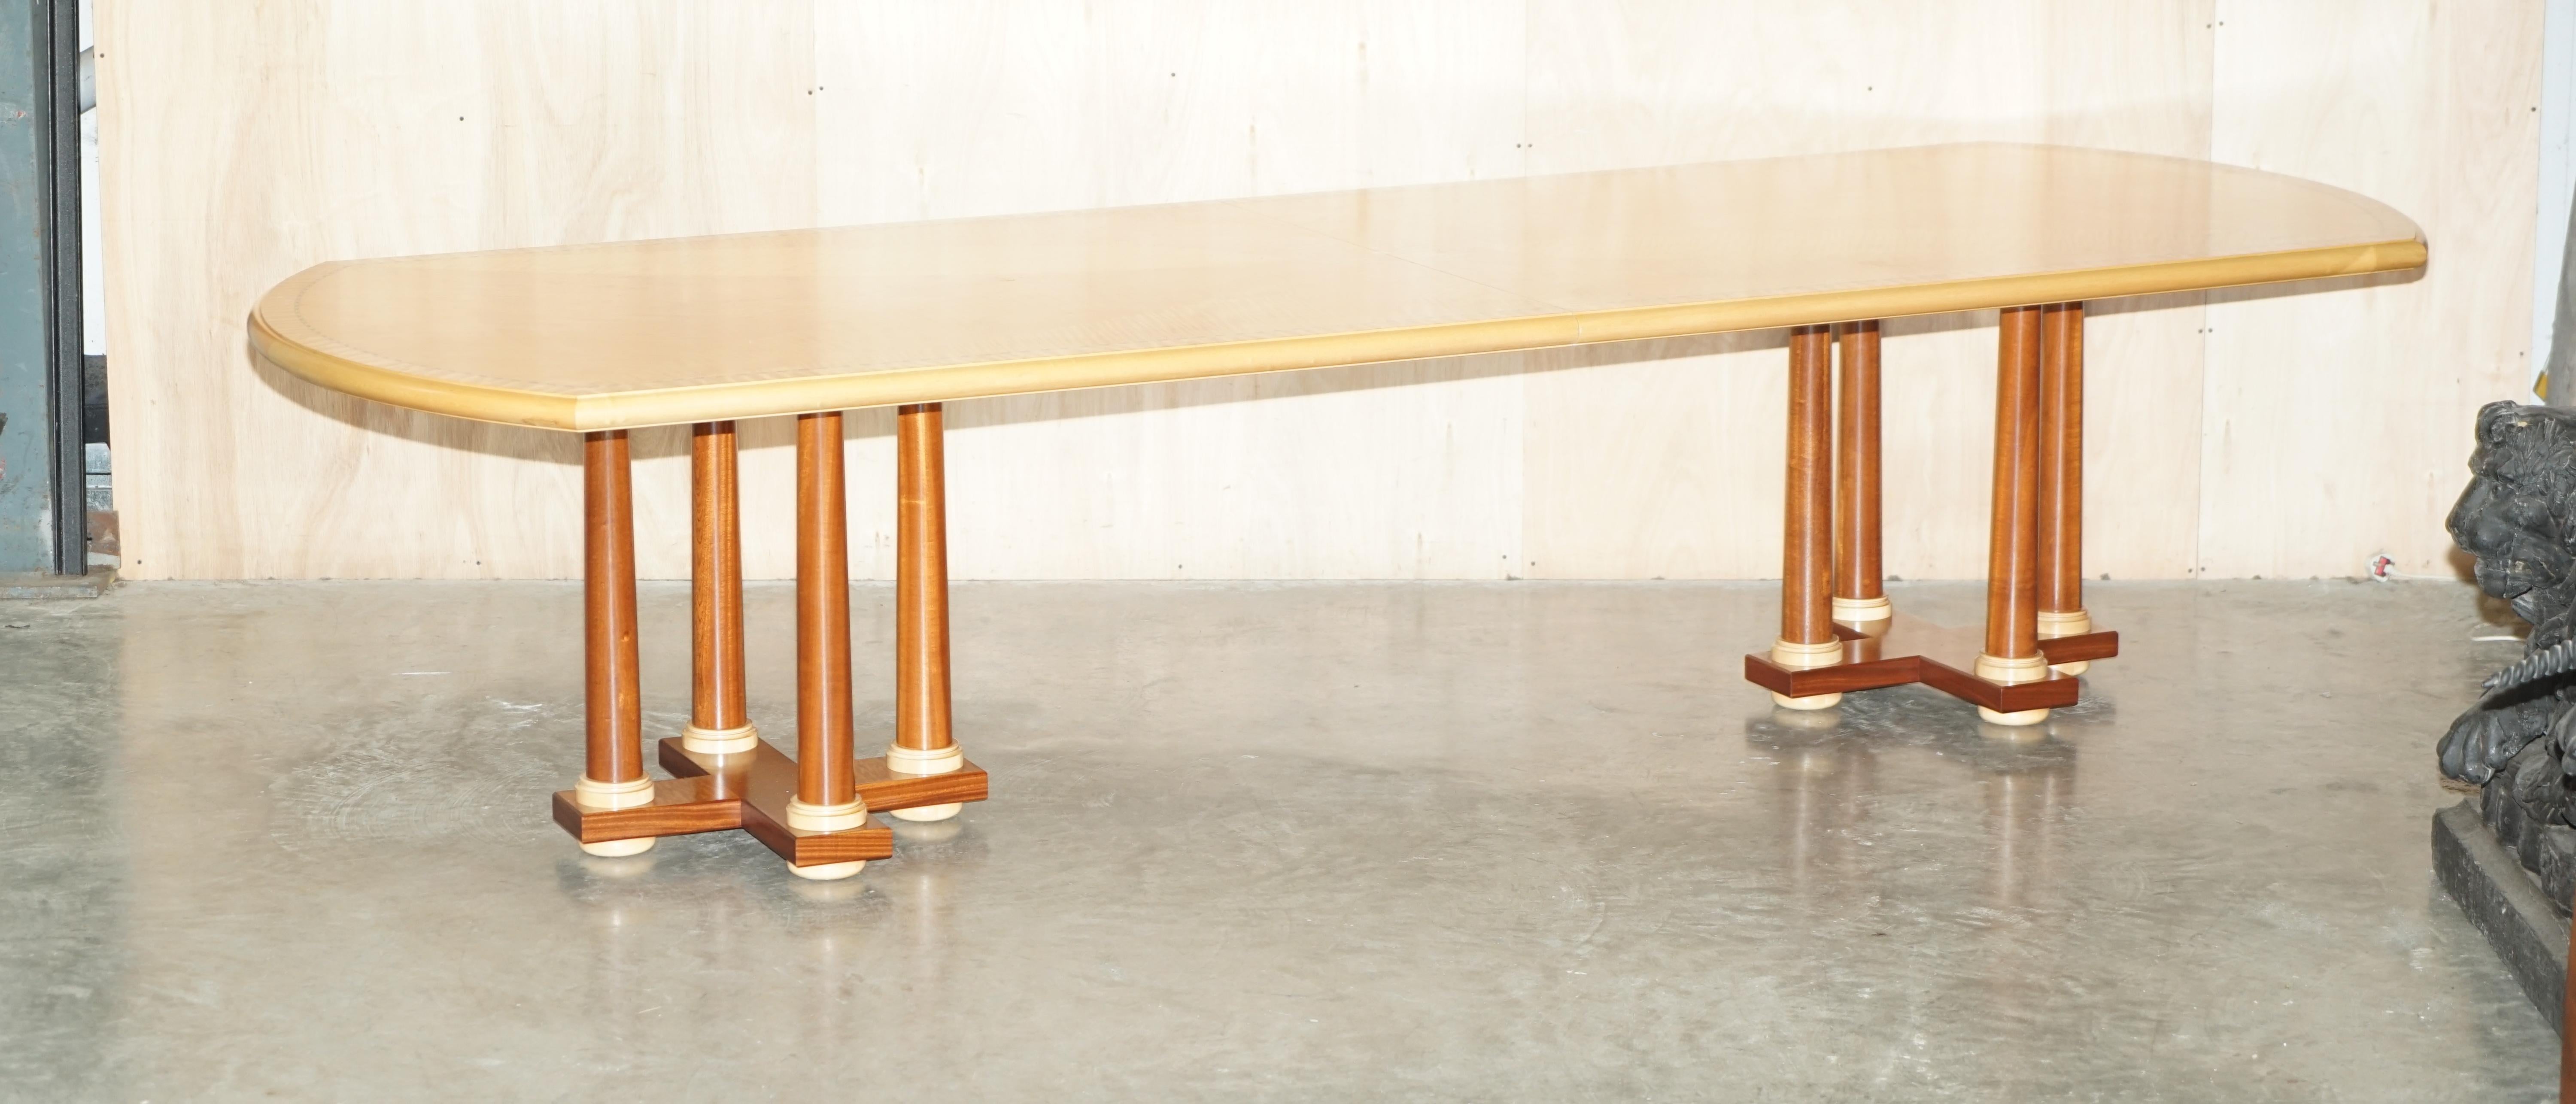 Wir freuen uns, diesen erhabenen Designer Andrew Varah 12-14 Personen, Satinholz mit Perlmuttintarsien, extra großen Esstisch mit korinthischen Säulenbeinen, der Teil einer Suite ist, zum Verkauf anzubieten.

Bitte beachten Sie die Liefergebühr